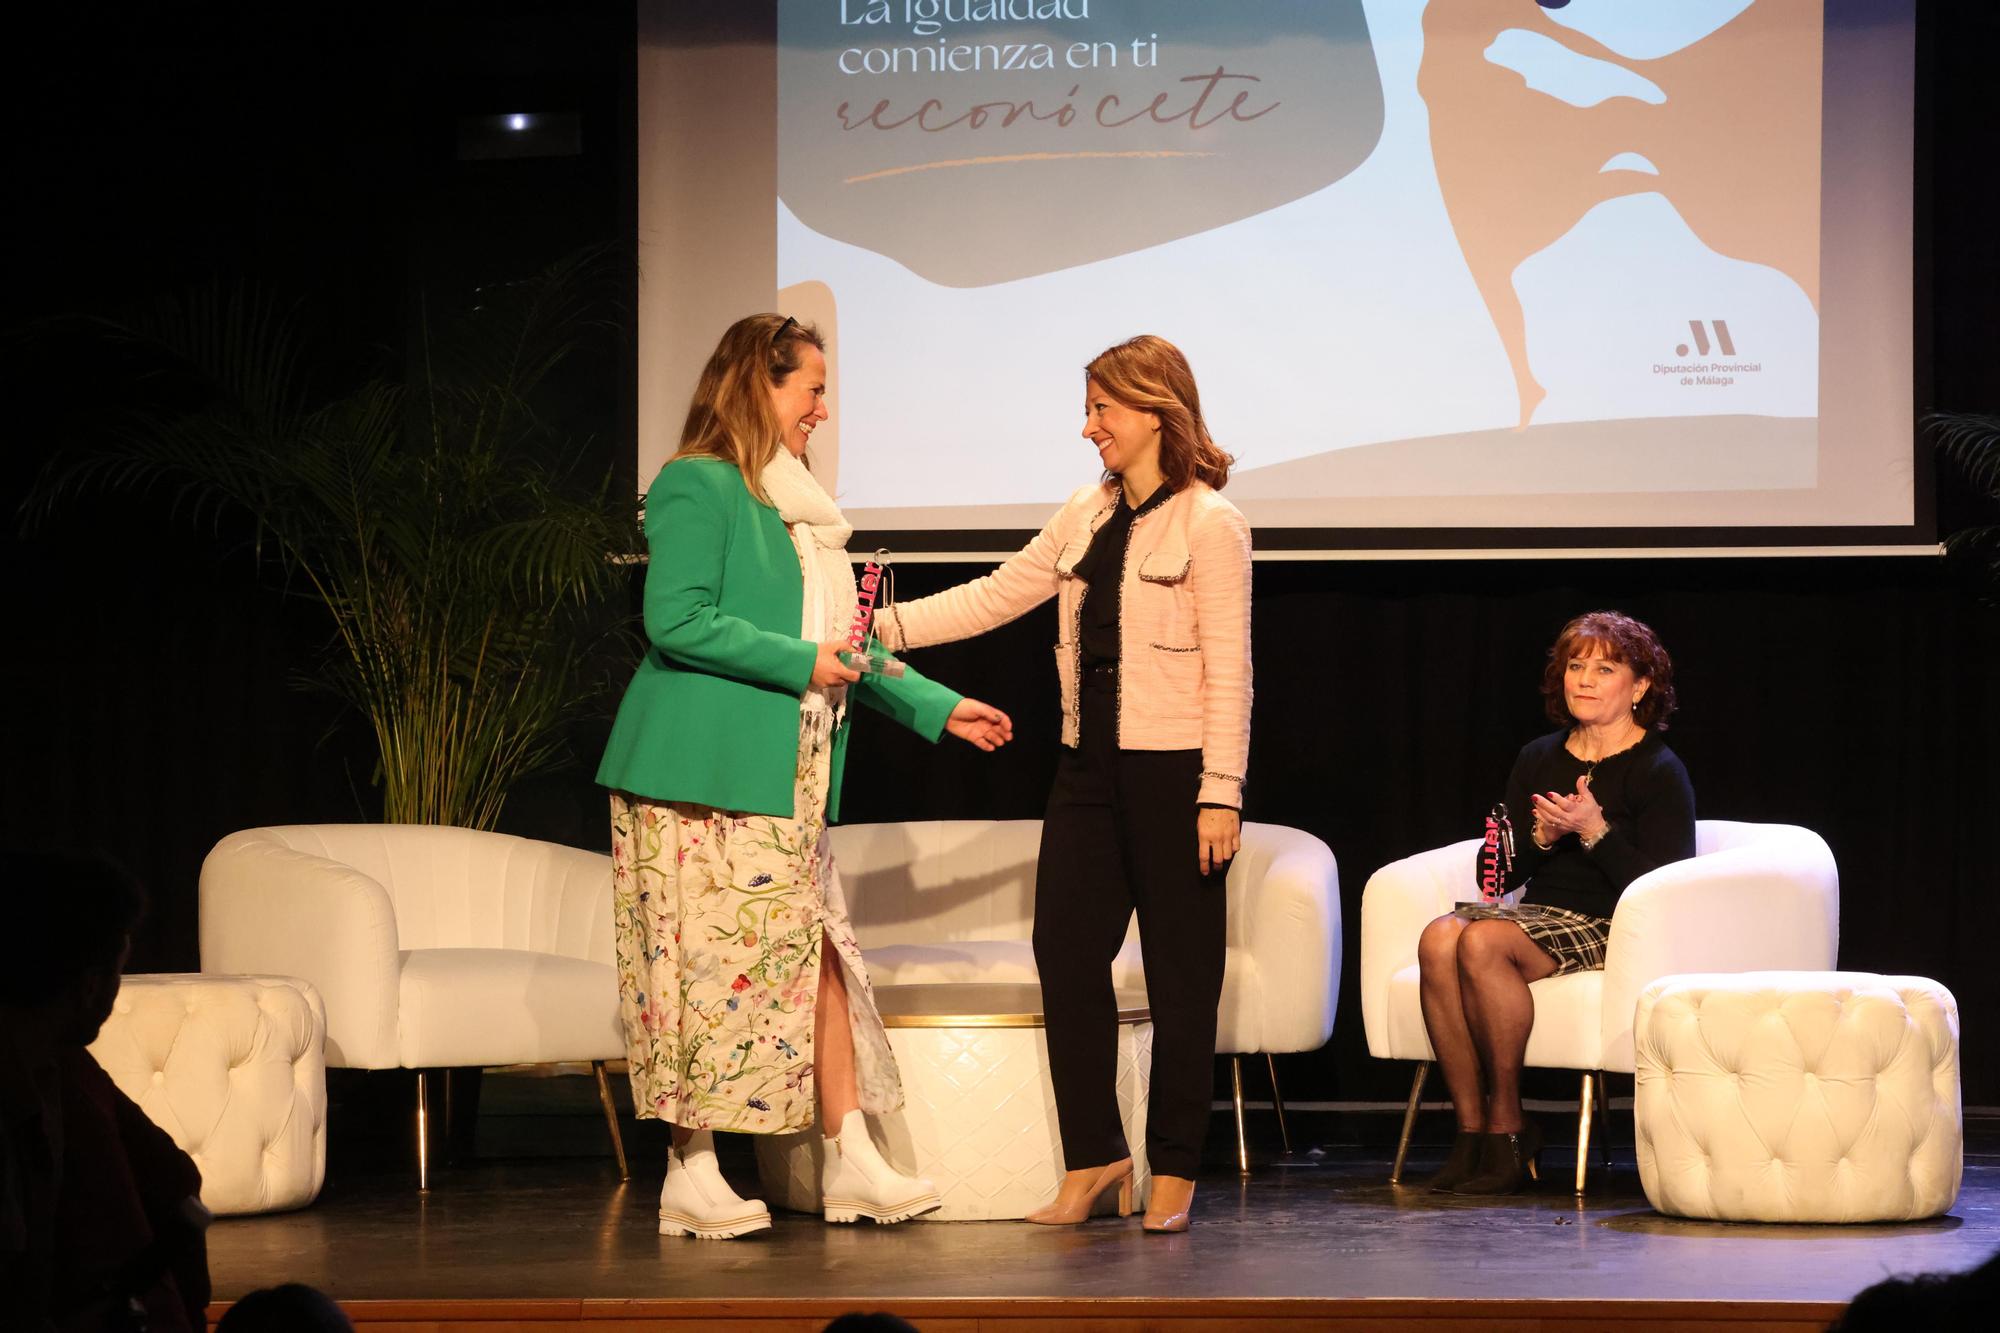 La Diputación de Málaga premia en su gala Reconocidas a nueve mujeres